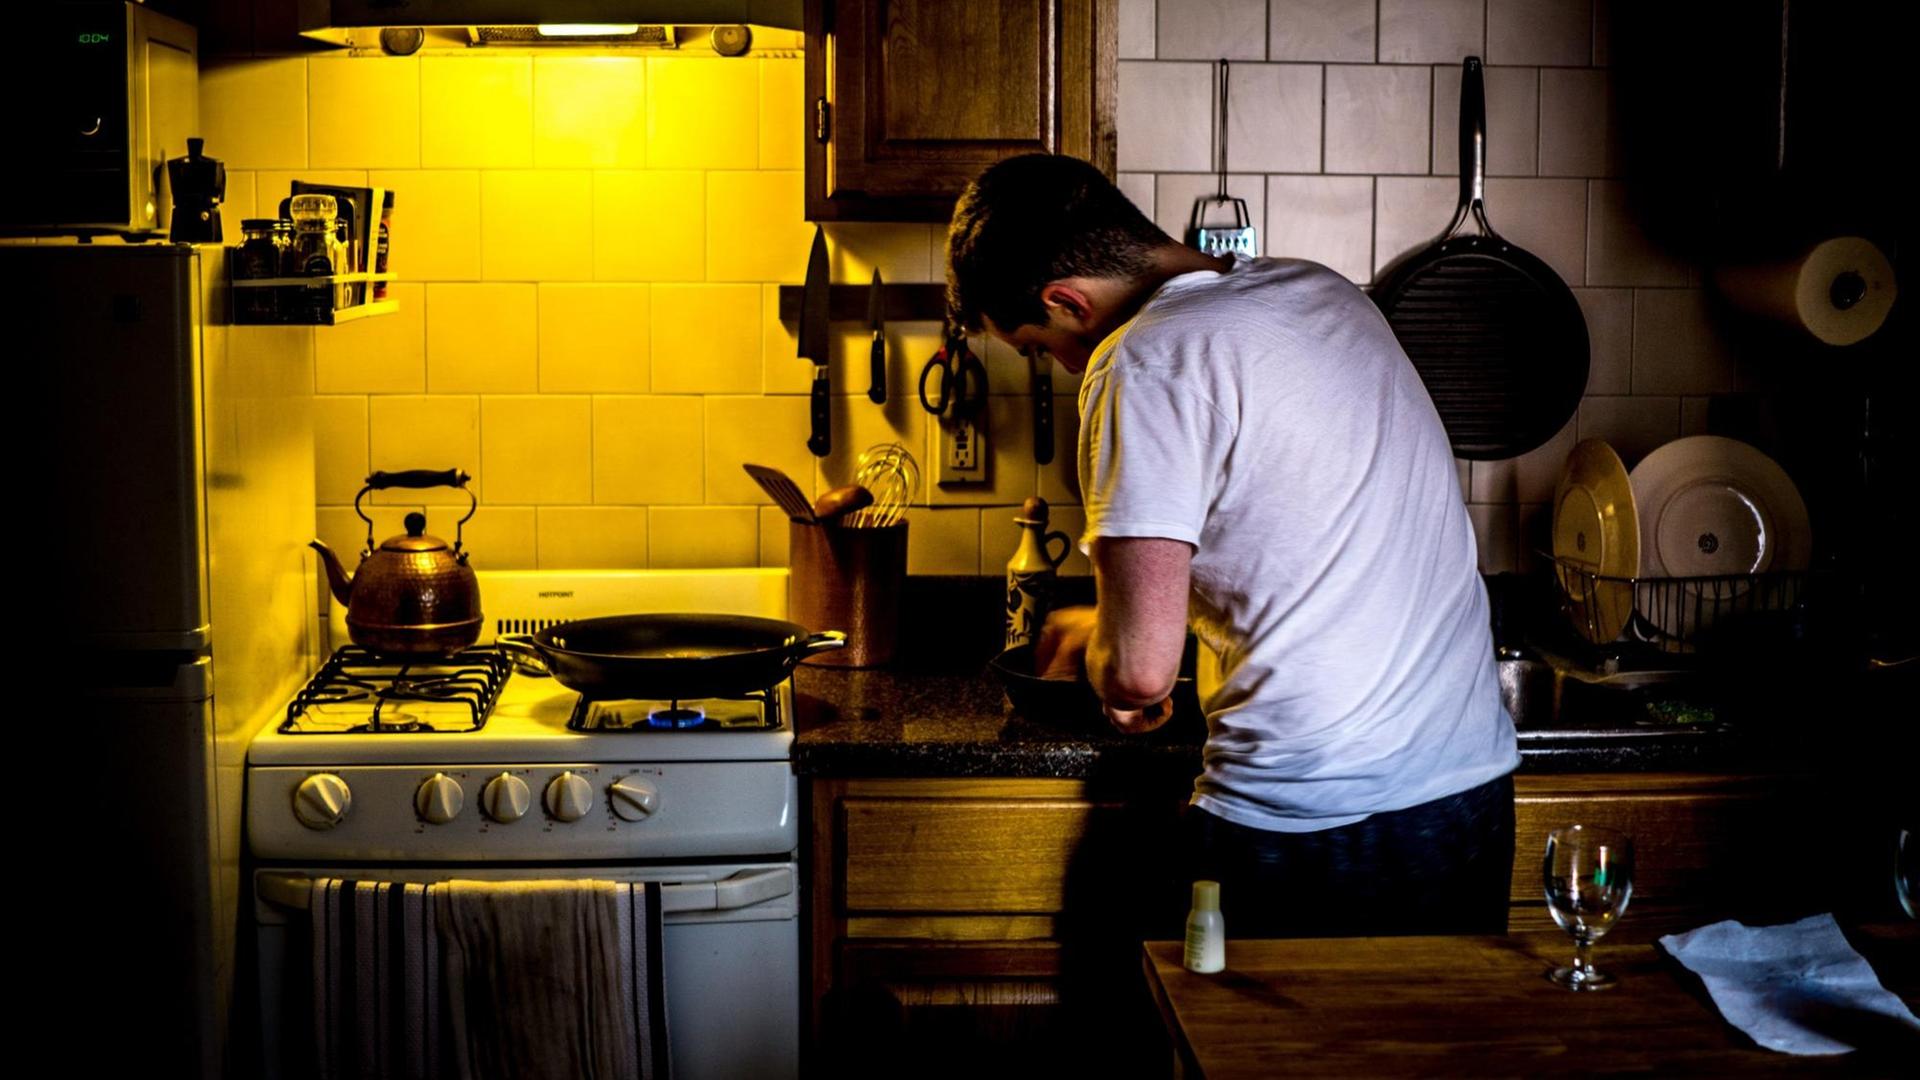 Das Bild zeigt einen Mann in einer kleinen Küche. Food Podcasts sind besonders bei Hobbyköchen beliebt – auch als Nebenbeibeschallung in der Küche.